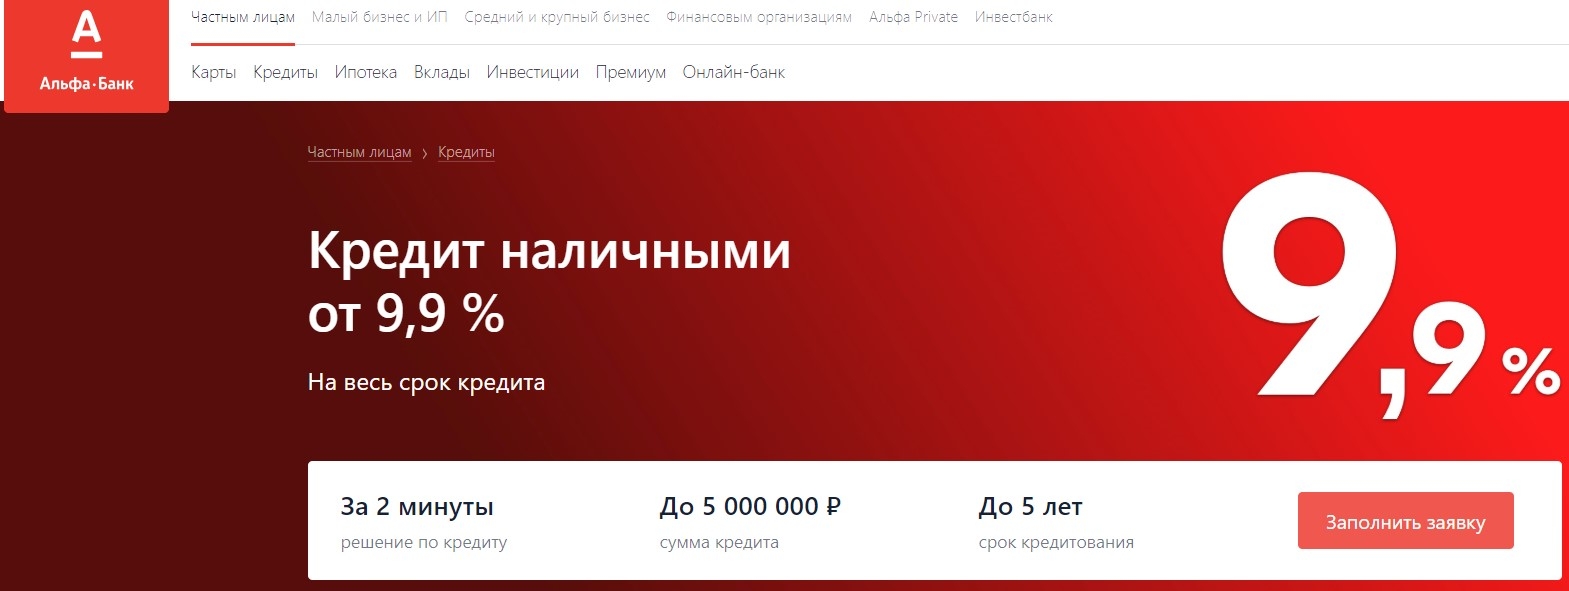 рассчитать кредит в сбербанке калькулятор онлайн в 2020 году москва потребительский калькулятор